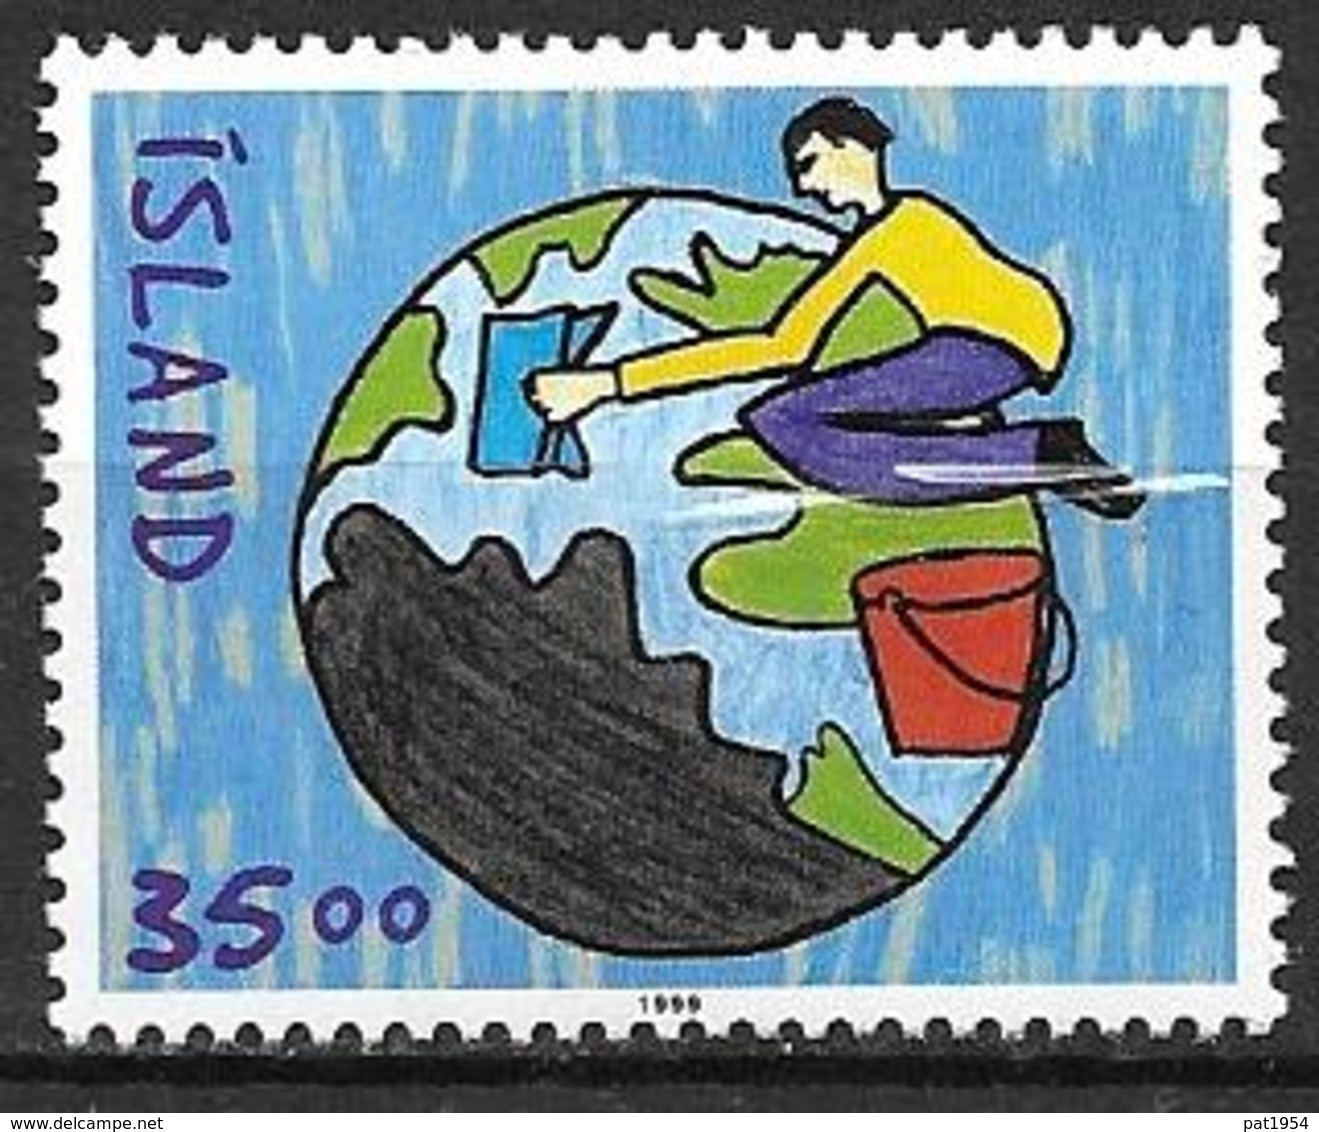 Islande 1999 N°877A Neuf Dessin D'enfants - Ongebruikt